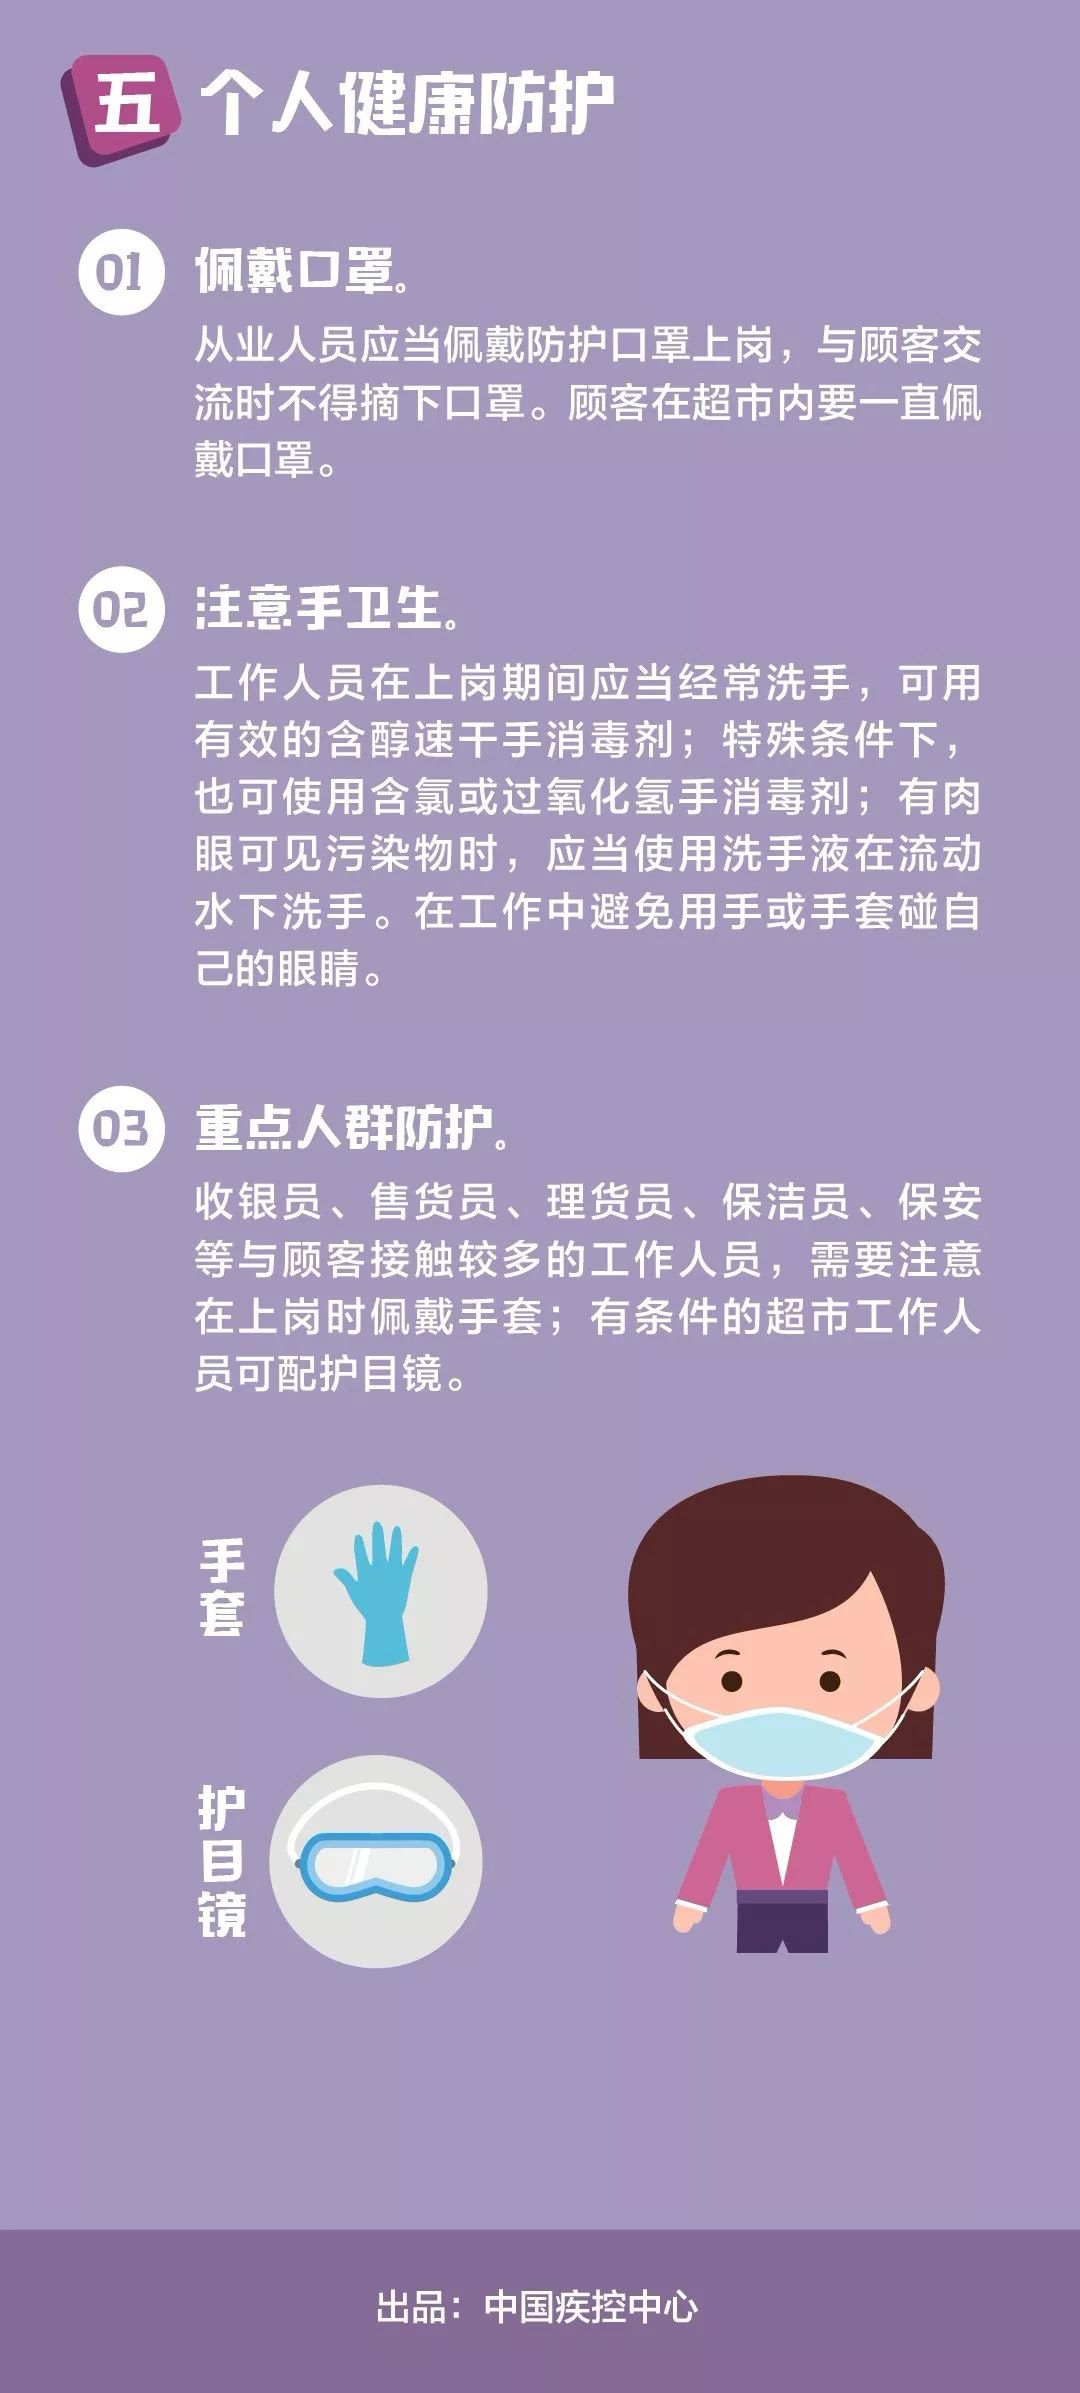 中国疾控中心提示超市卫生防护指南超市卫生篇